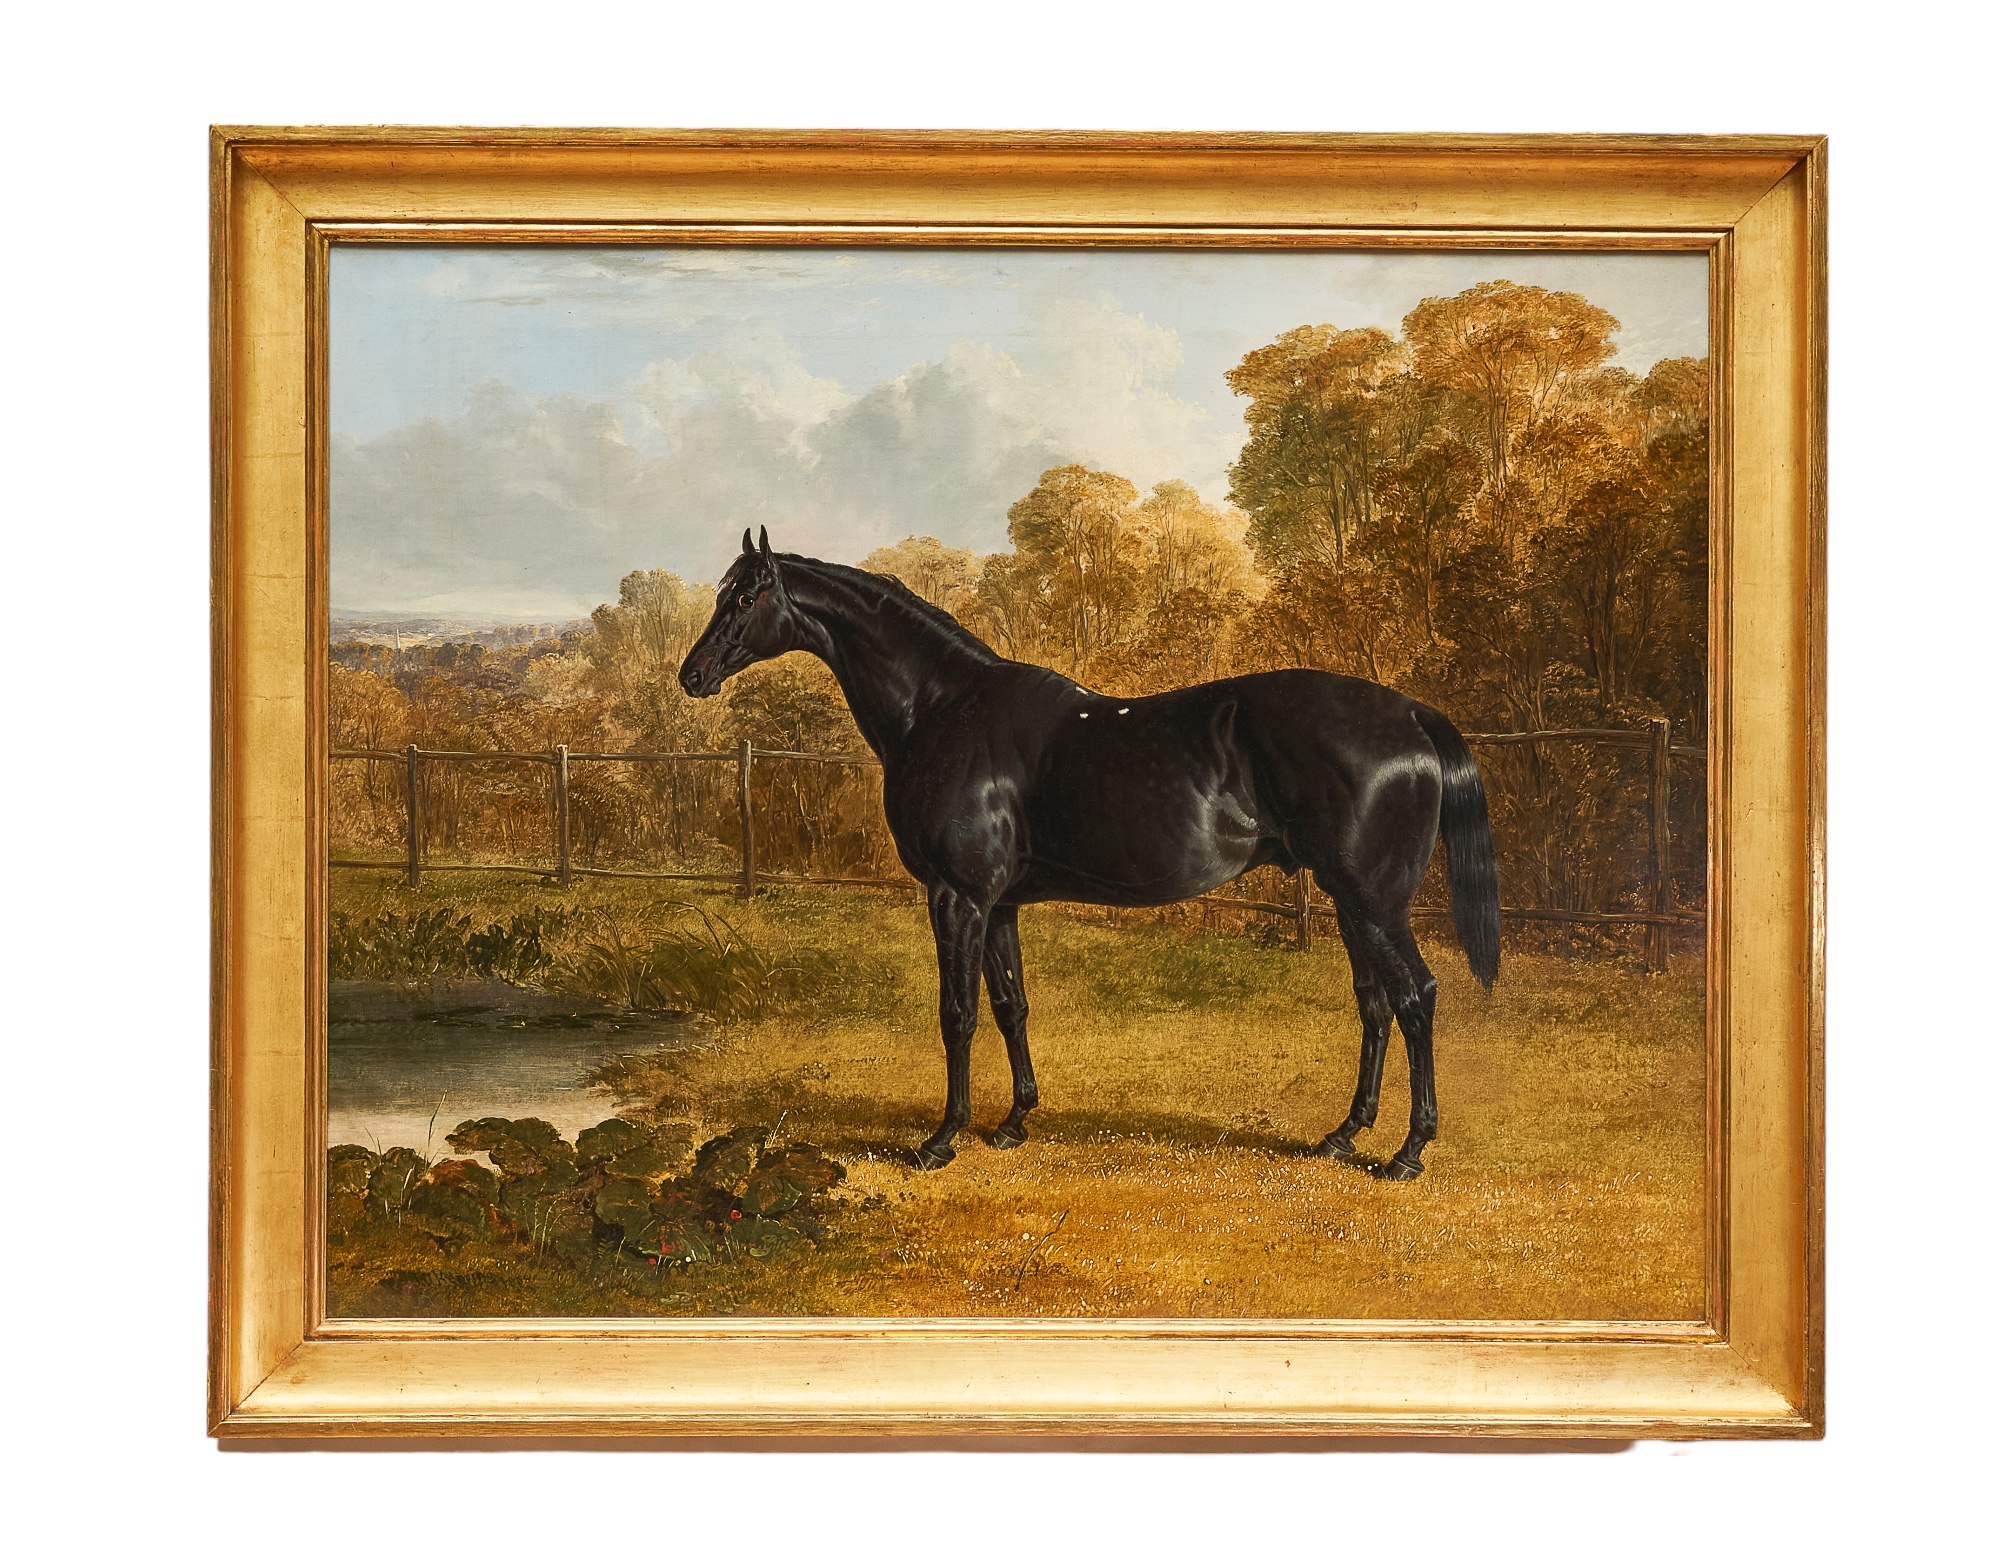 John Frederick Herring Sr. (1795 - 1865), Portrait of the thoroughbred stallion Sheet Anchor